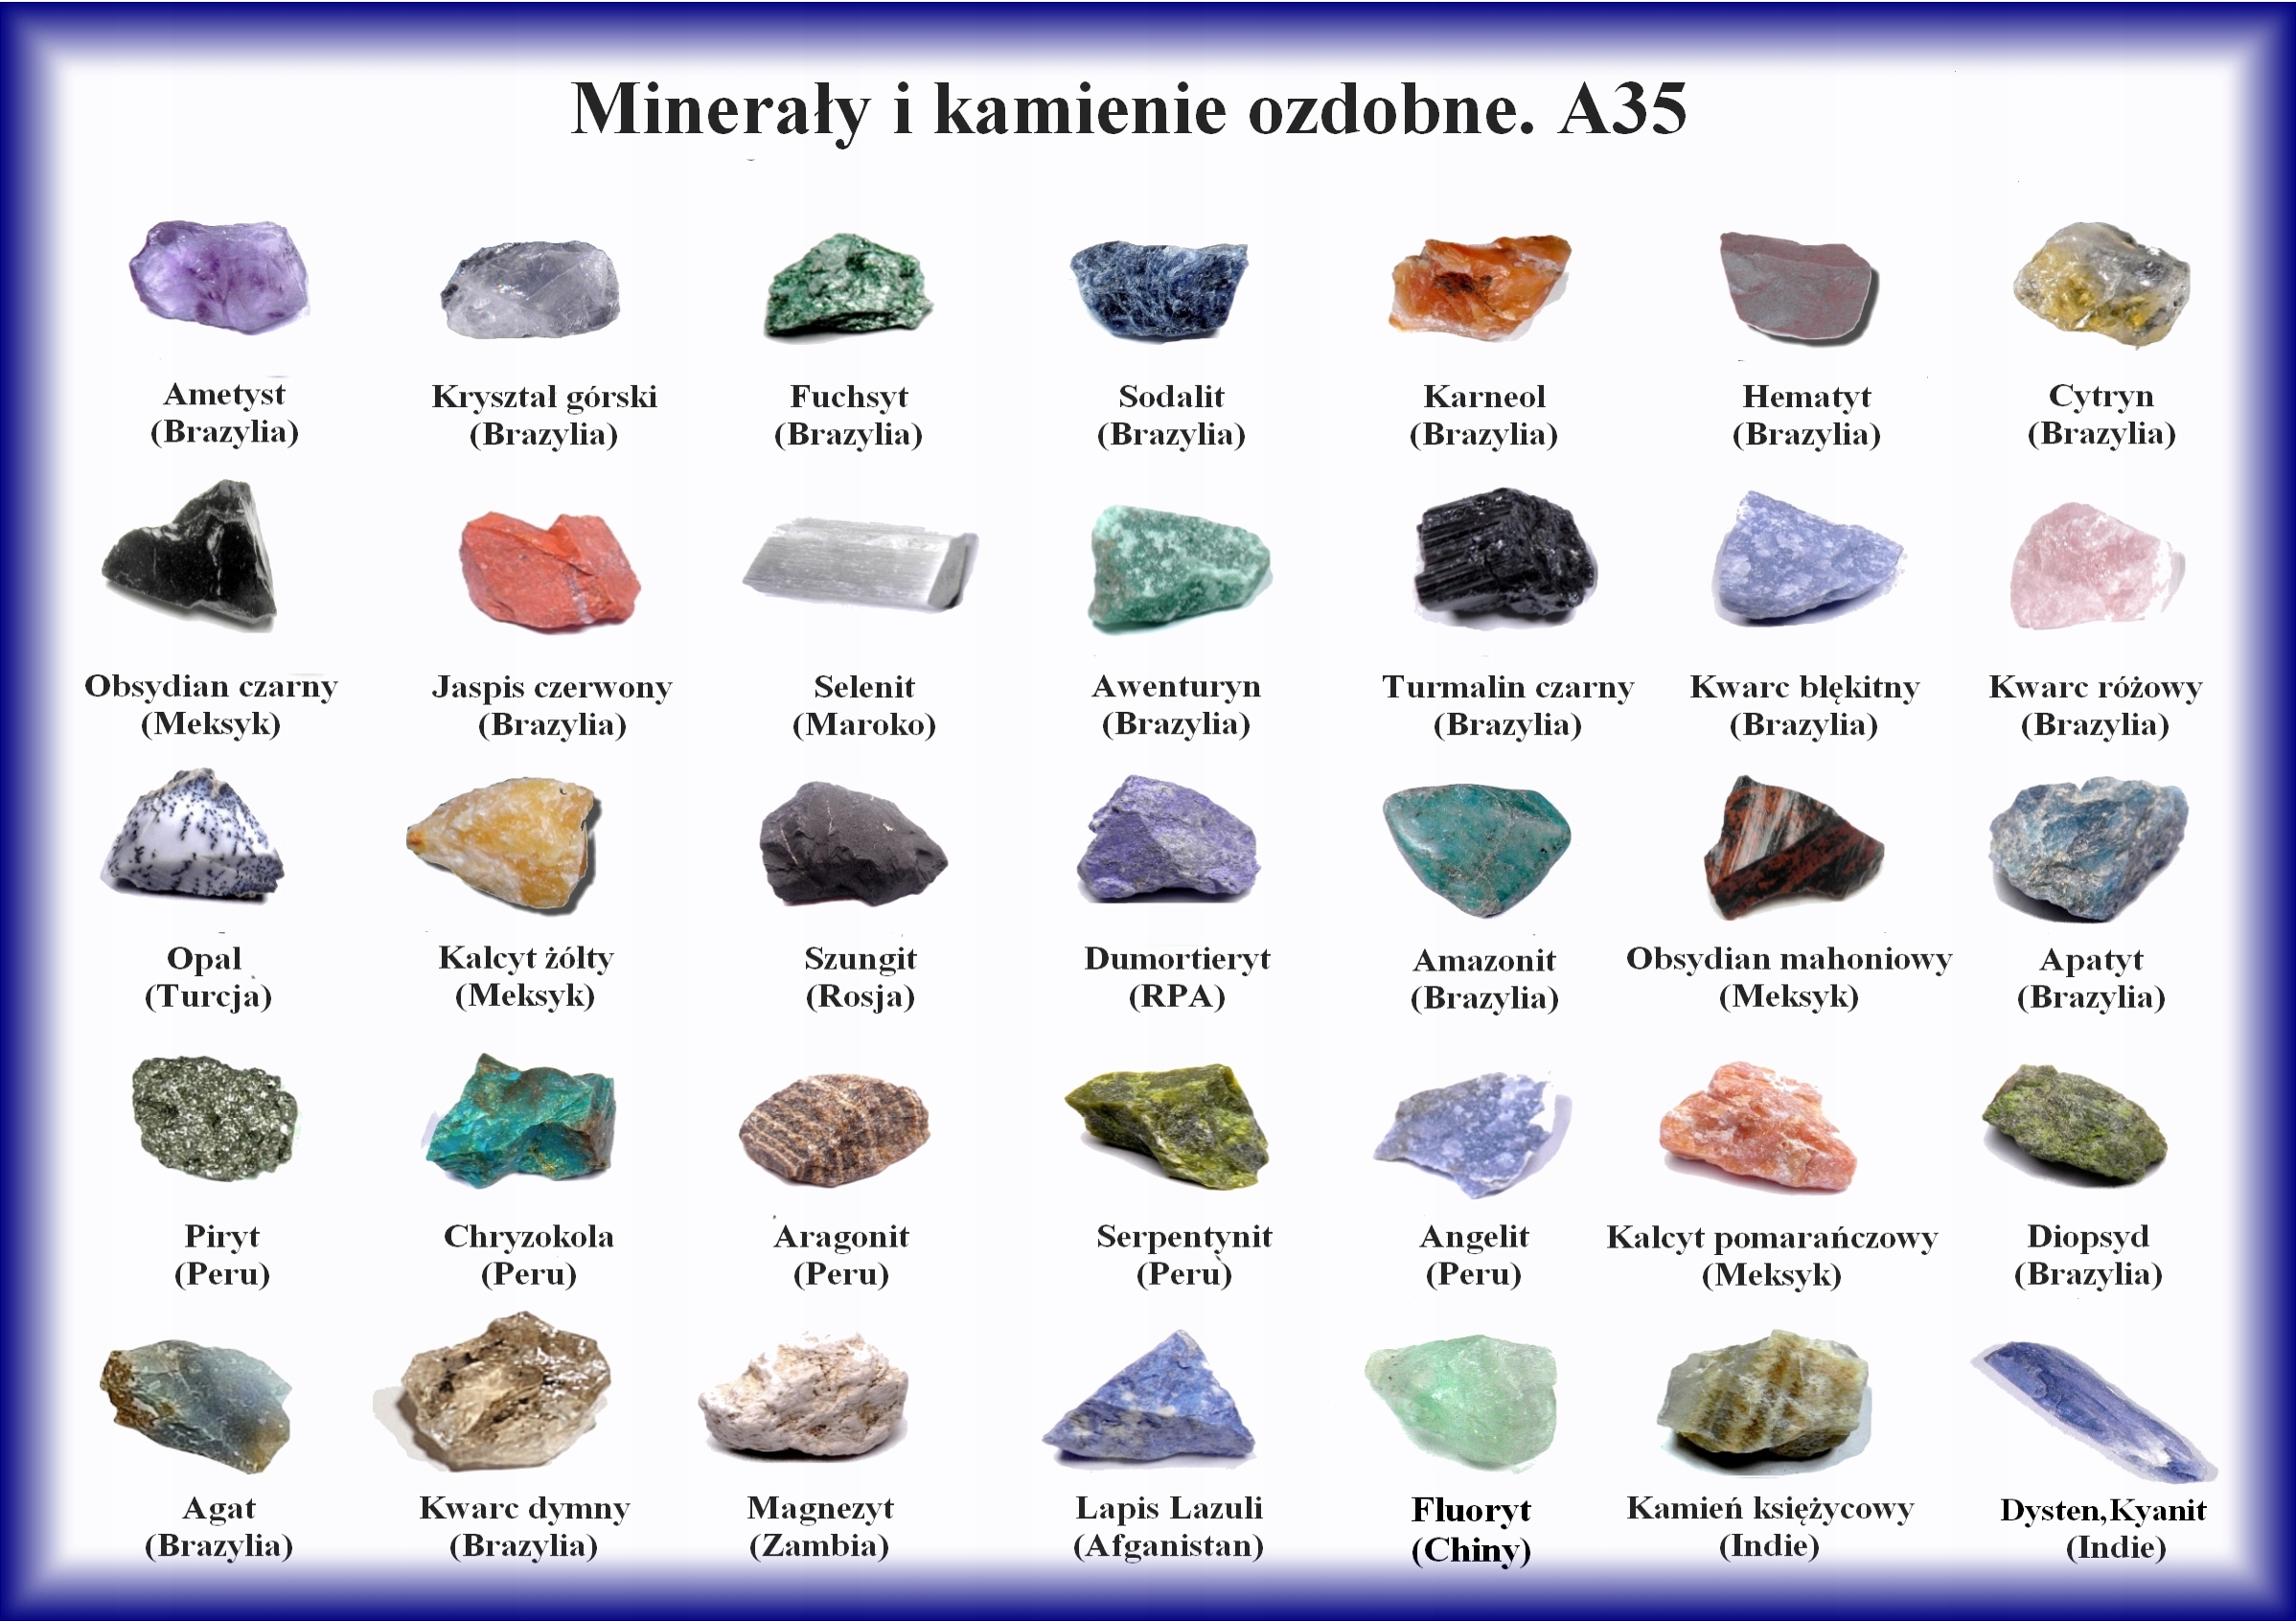 Какие бывают камни название. Справочник минералы, горные породы, драгоценные камни. Название всех камней и минералов. Полудрагоценные минералы. Природные камни названия.